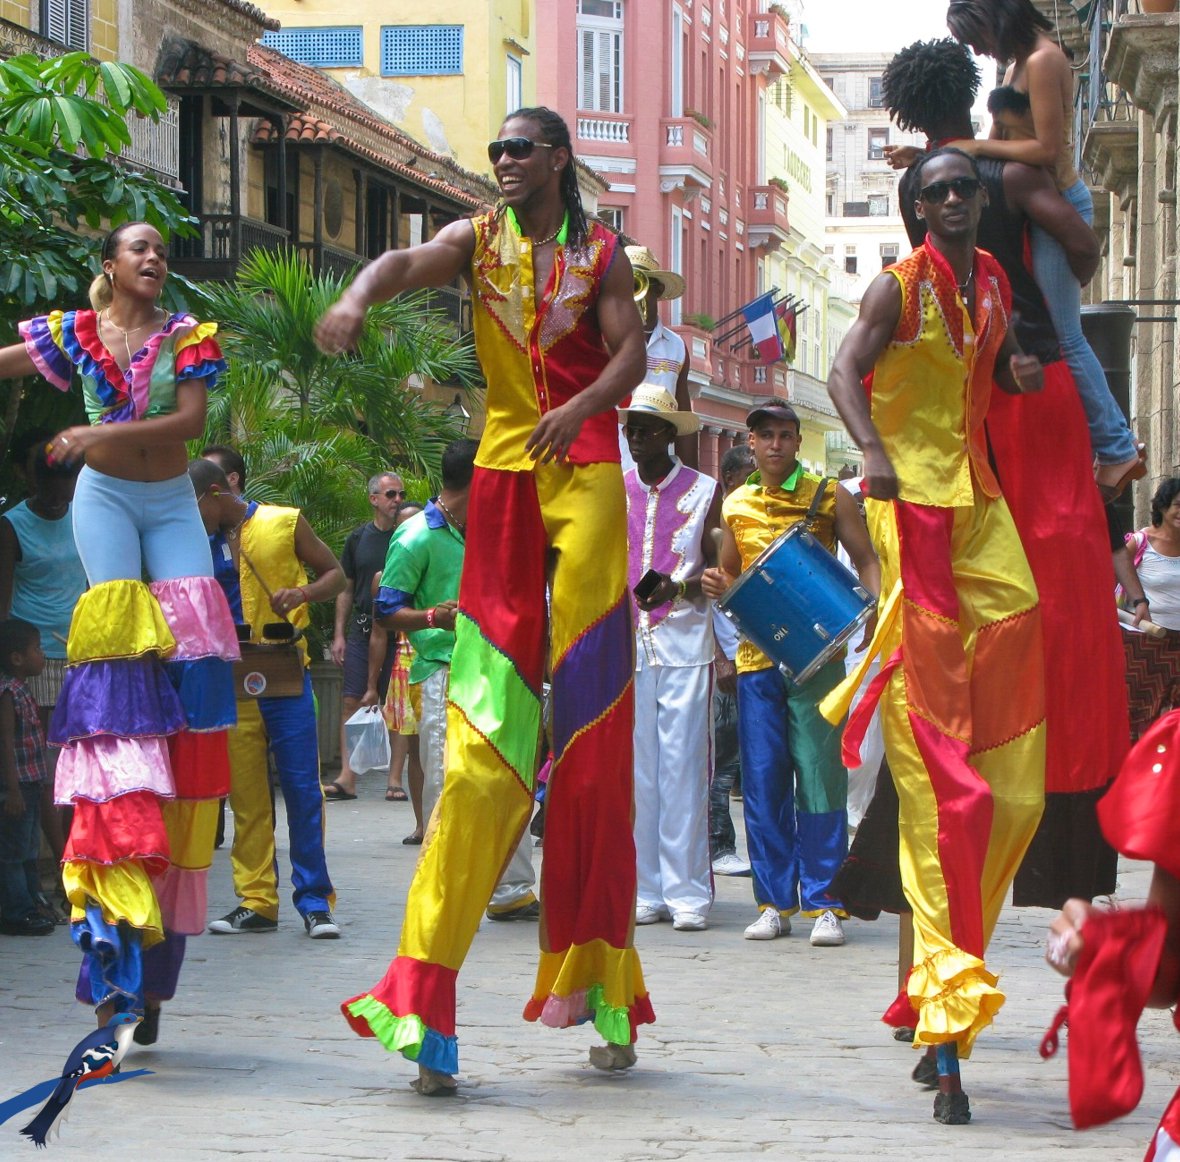 Disfruta la Fiesta en La Habana, Cuba